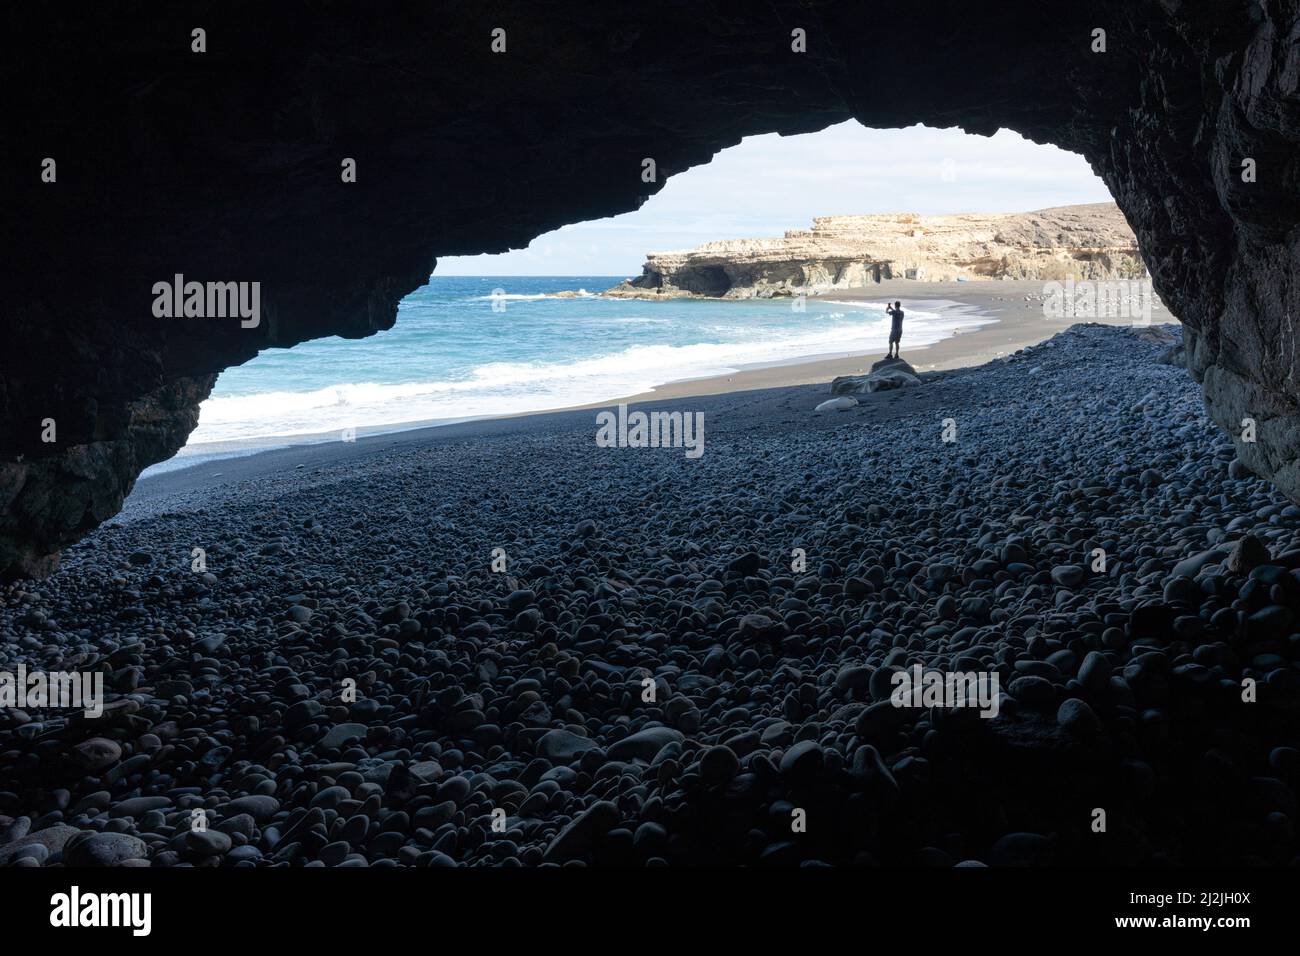 Silueta de persona fotografiando el mar con vista desde una cueva de mar, Ajuy, Fuerteventura, Islas Canarias, España Foto de stock